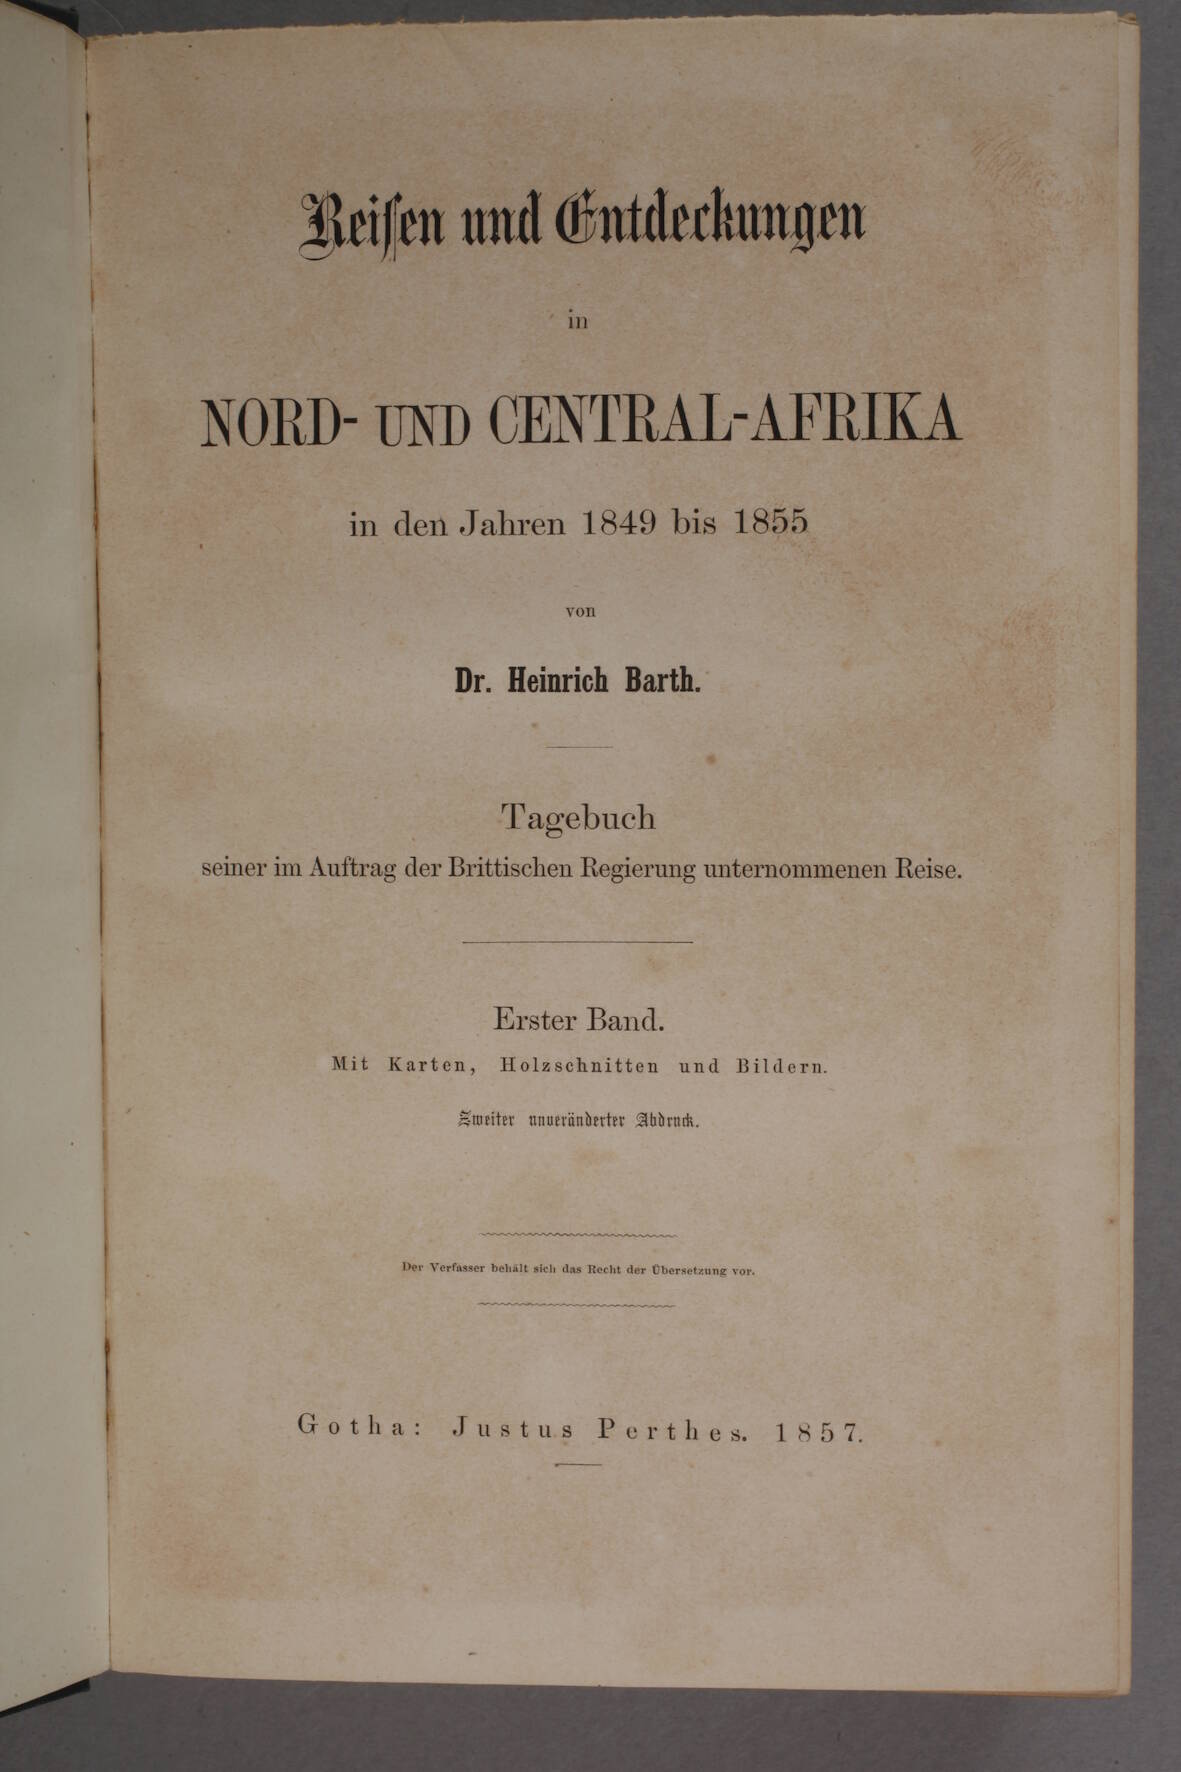 Reisen und Entdeckungenin Nord- und Central-Afrika in den Jahren 1849 bis 1855 von Heinrich Barth. - Image 2 of 4